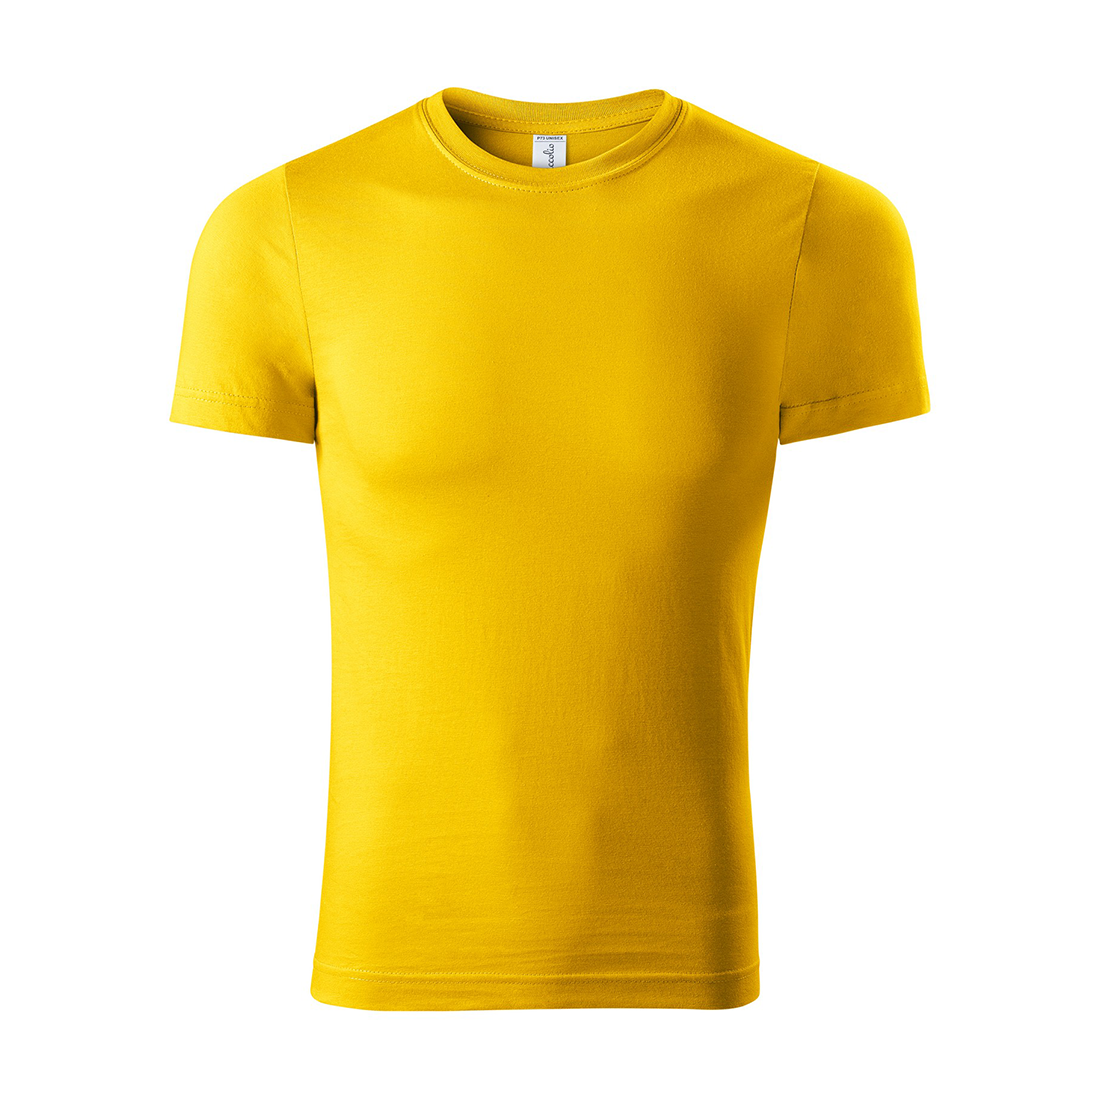 T-shirt unisexe 100% coton - Les vêtements de protection